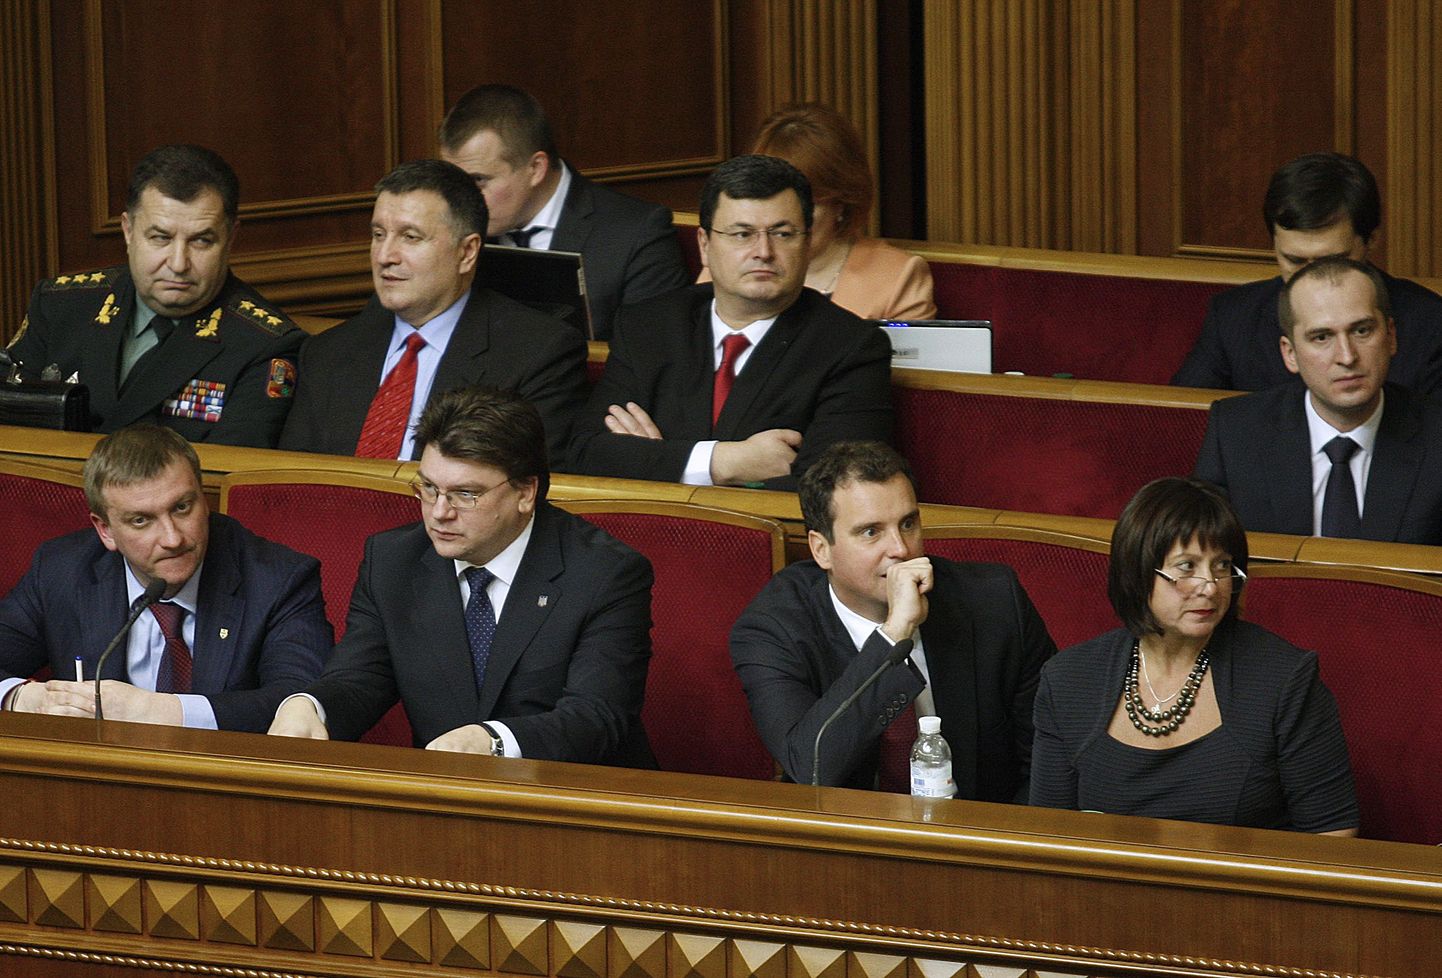 Ukraina uued ministrid. Esimeses reas vasakult teine on Aivaras Abromavičius ja paremalt esimene USA päritolu Natalia Jaresko. Gruusia endine tervishoiuminister Aleksandr Kvitašvili on teises reas paremalt teine.